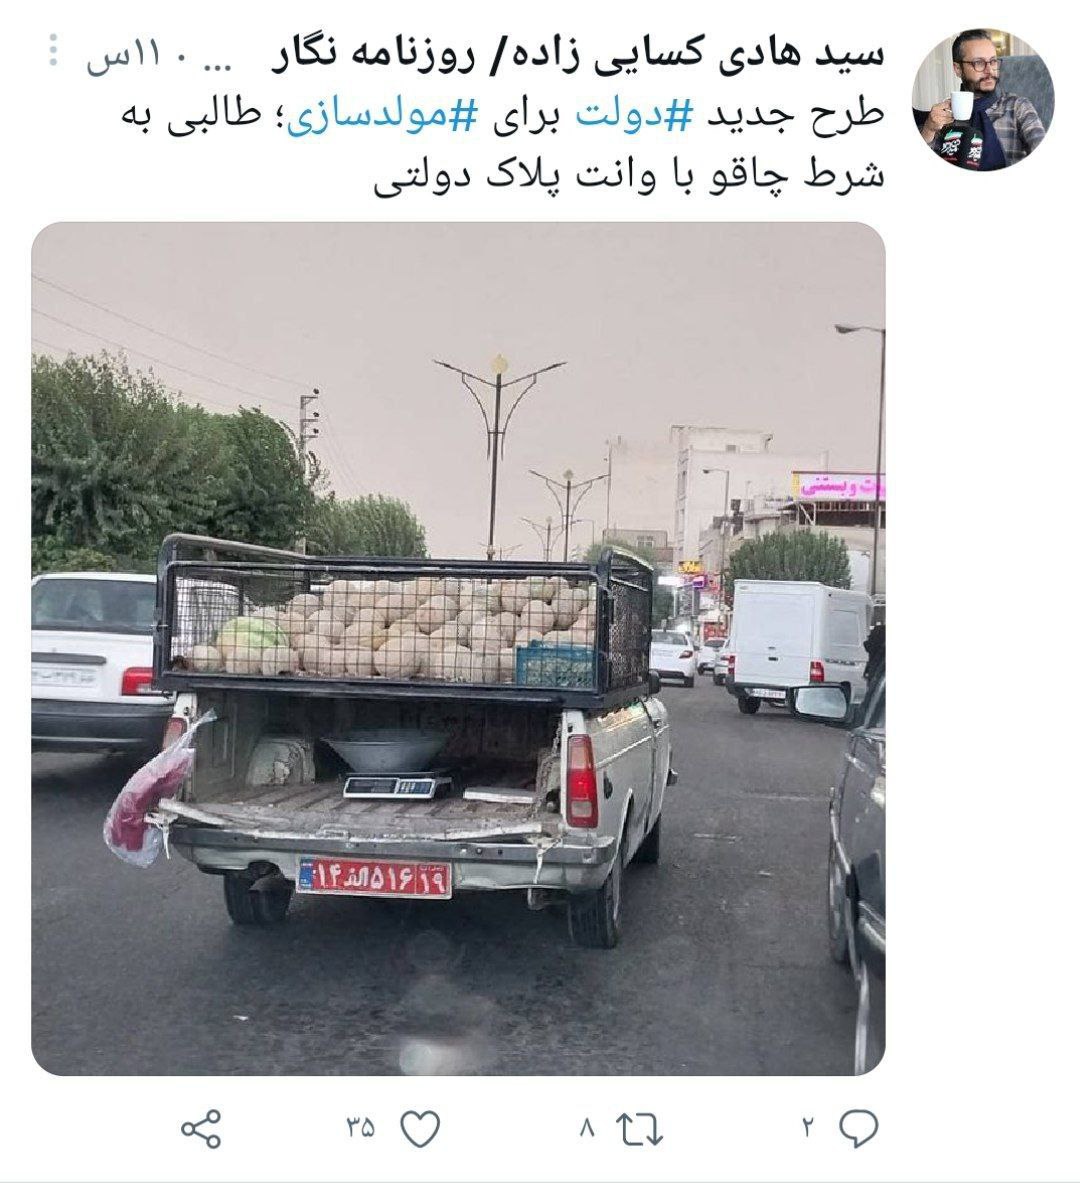 عکسی از فروش طالبی با خودروی پلاک دولتی!